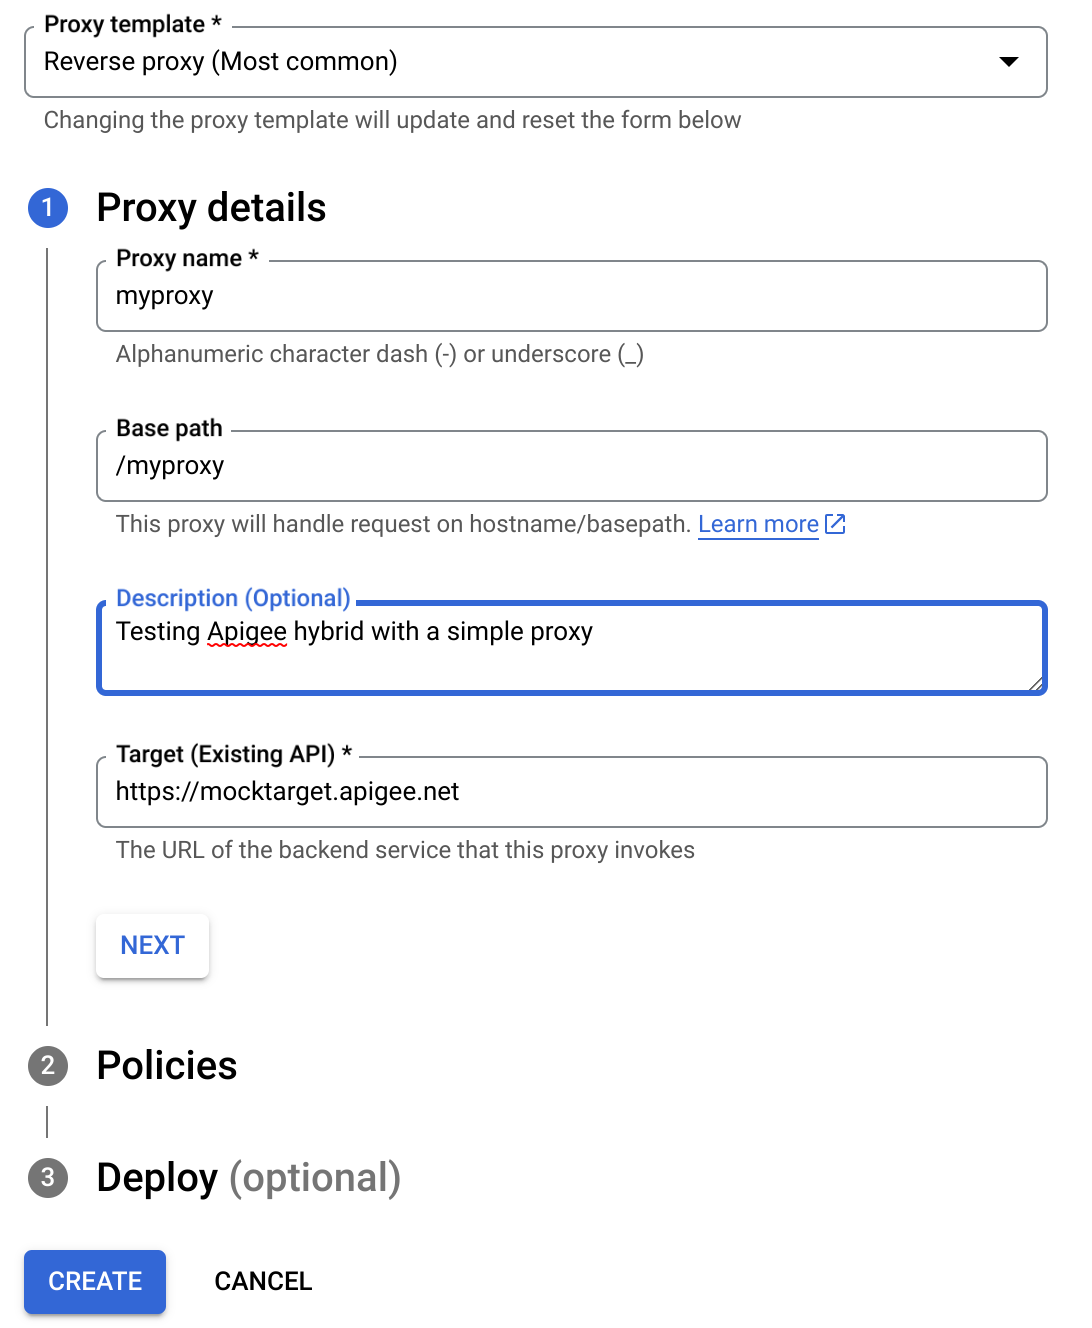 Detalles del proxy en el asistente para crear proxy